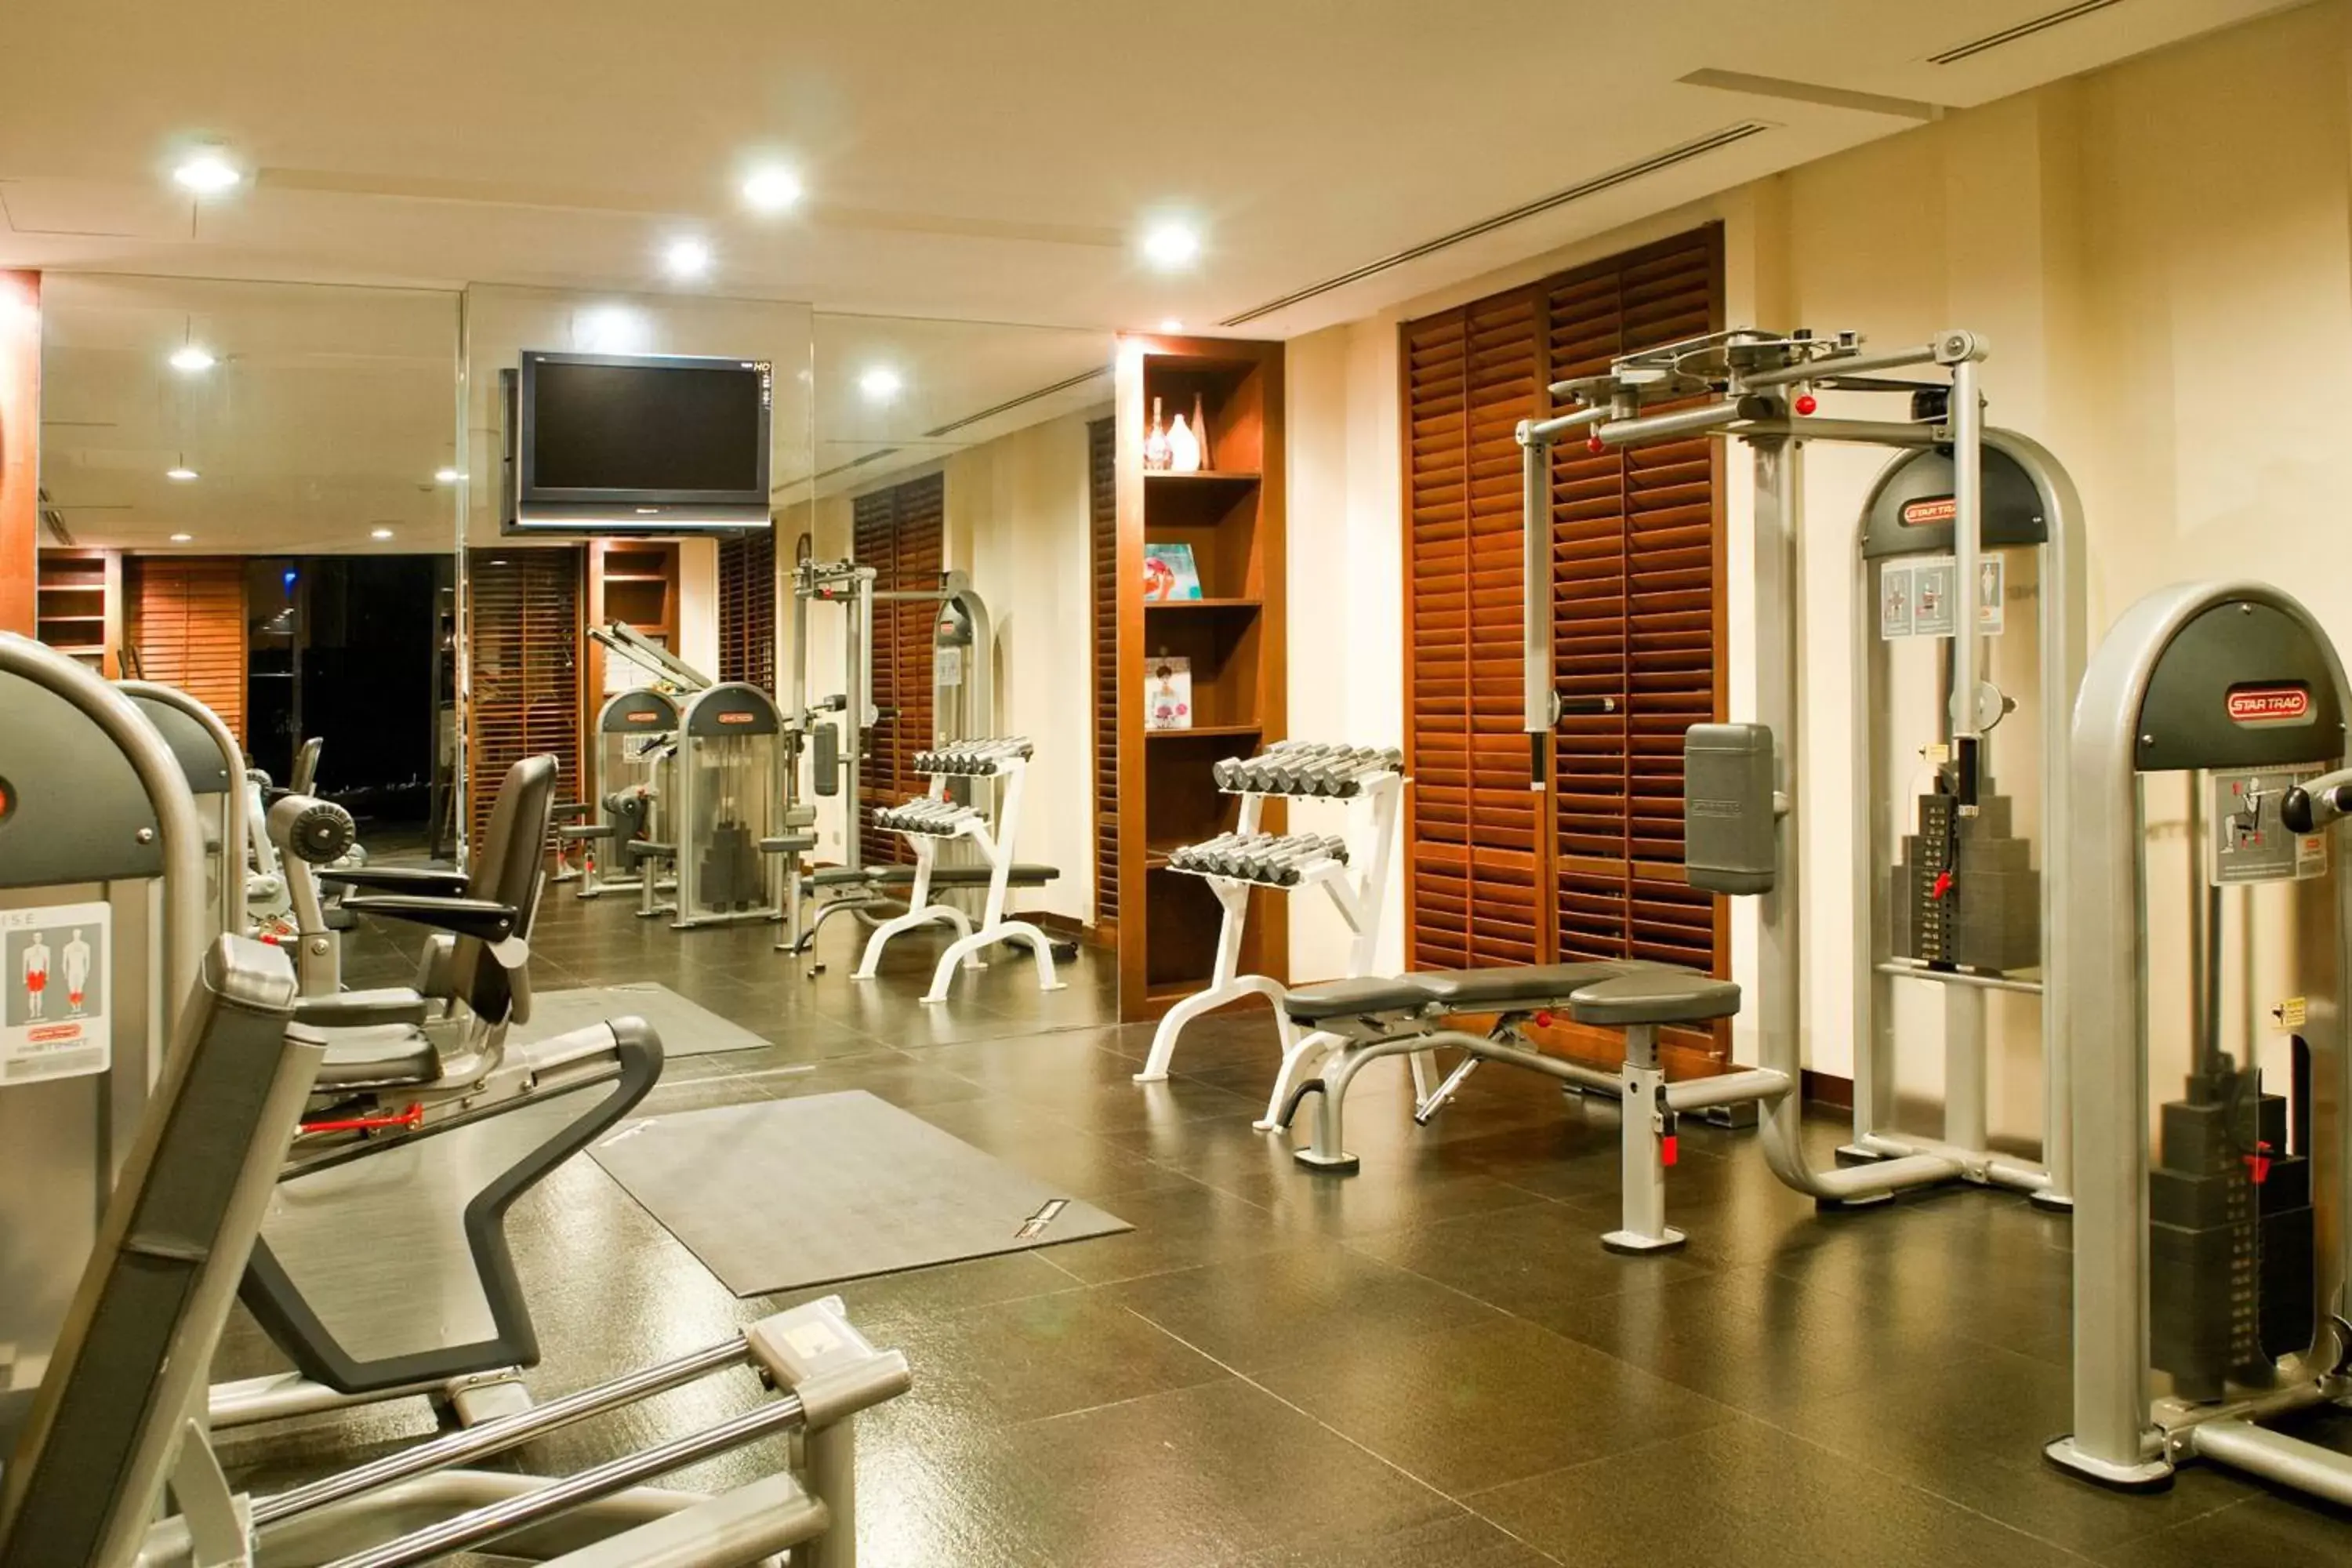 Fitness centre/facilities, Fitness Center/Facilities in V Villas Hua Hin, MGallery